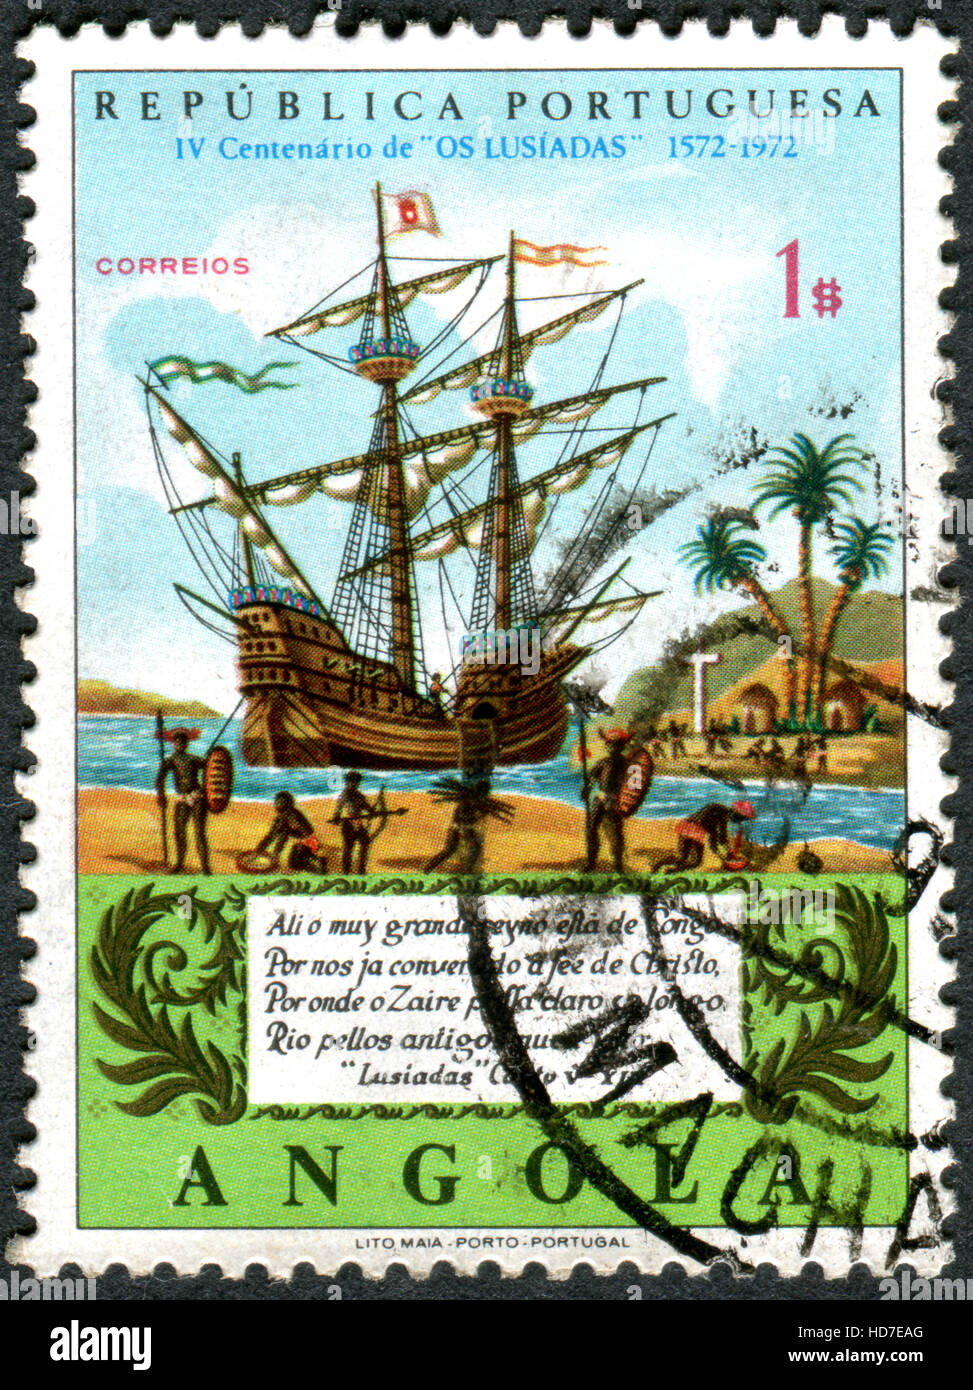 Un timbre imprimé en Angola, consacrée à la 4ème centenaire de la publication de l'Lusiads, présente le fleuve Congo sur Galleon Banque D'Images